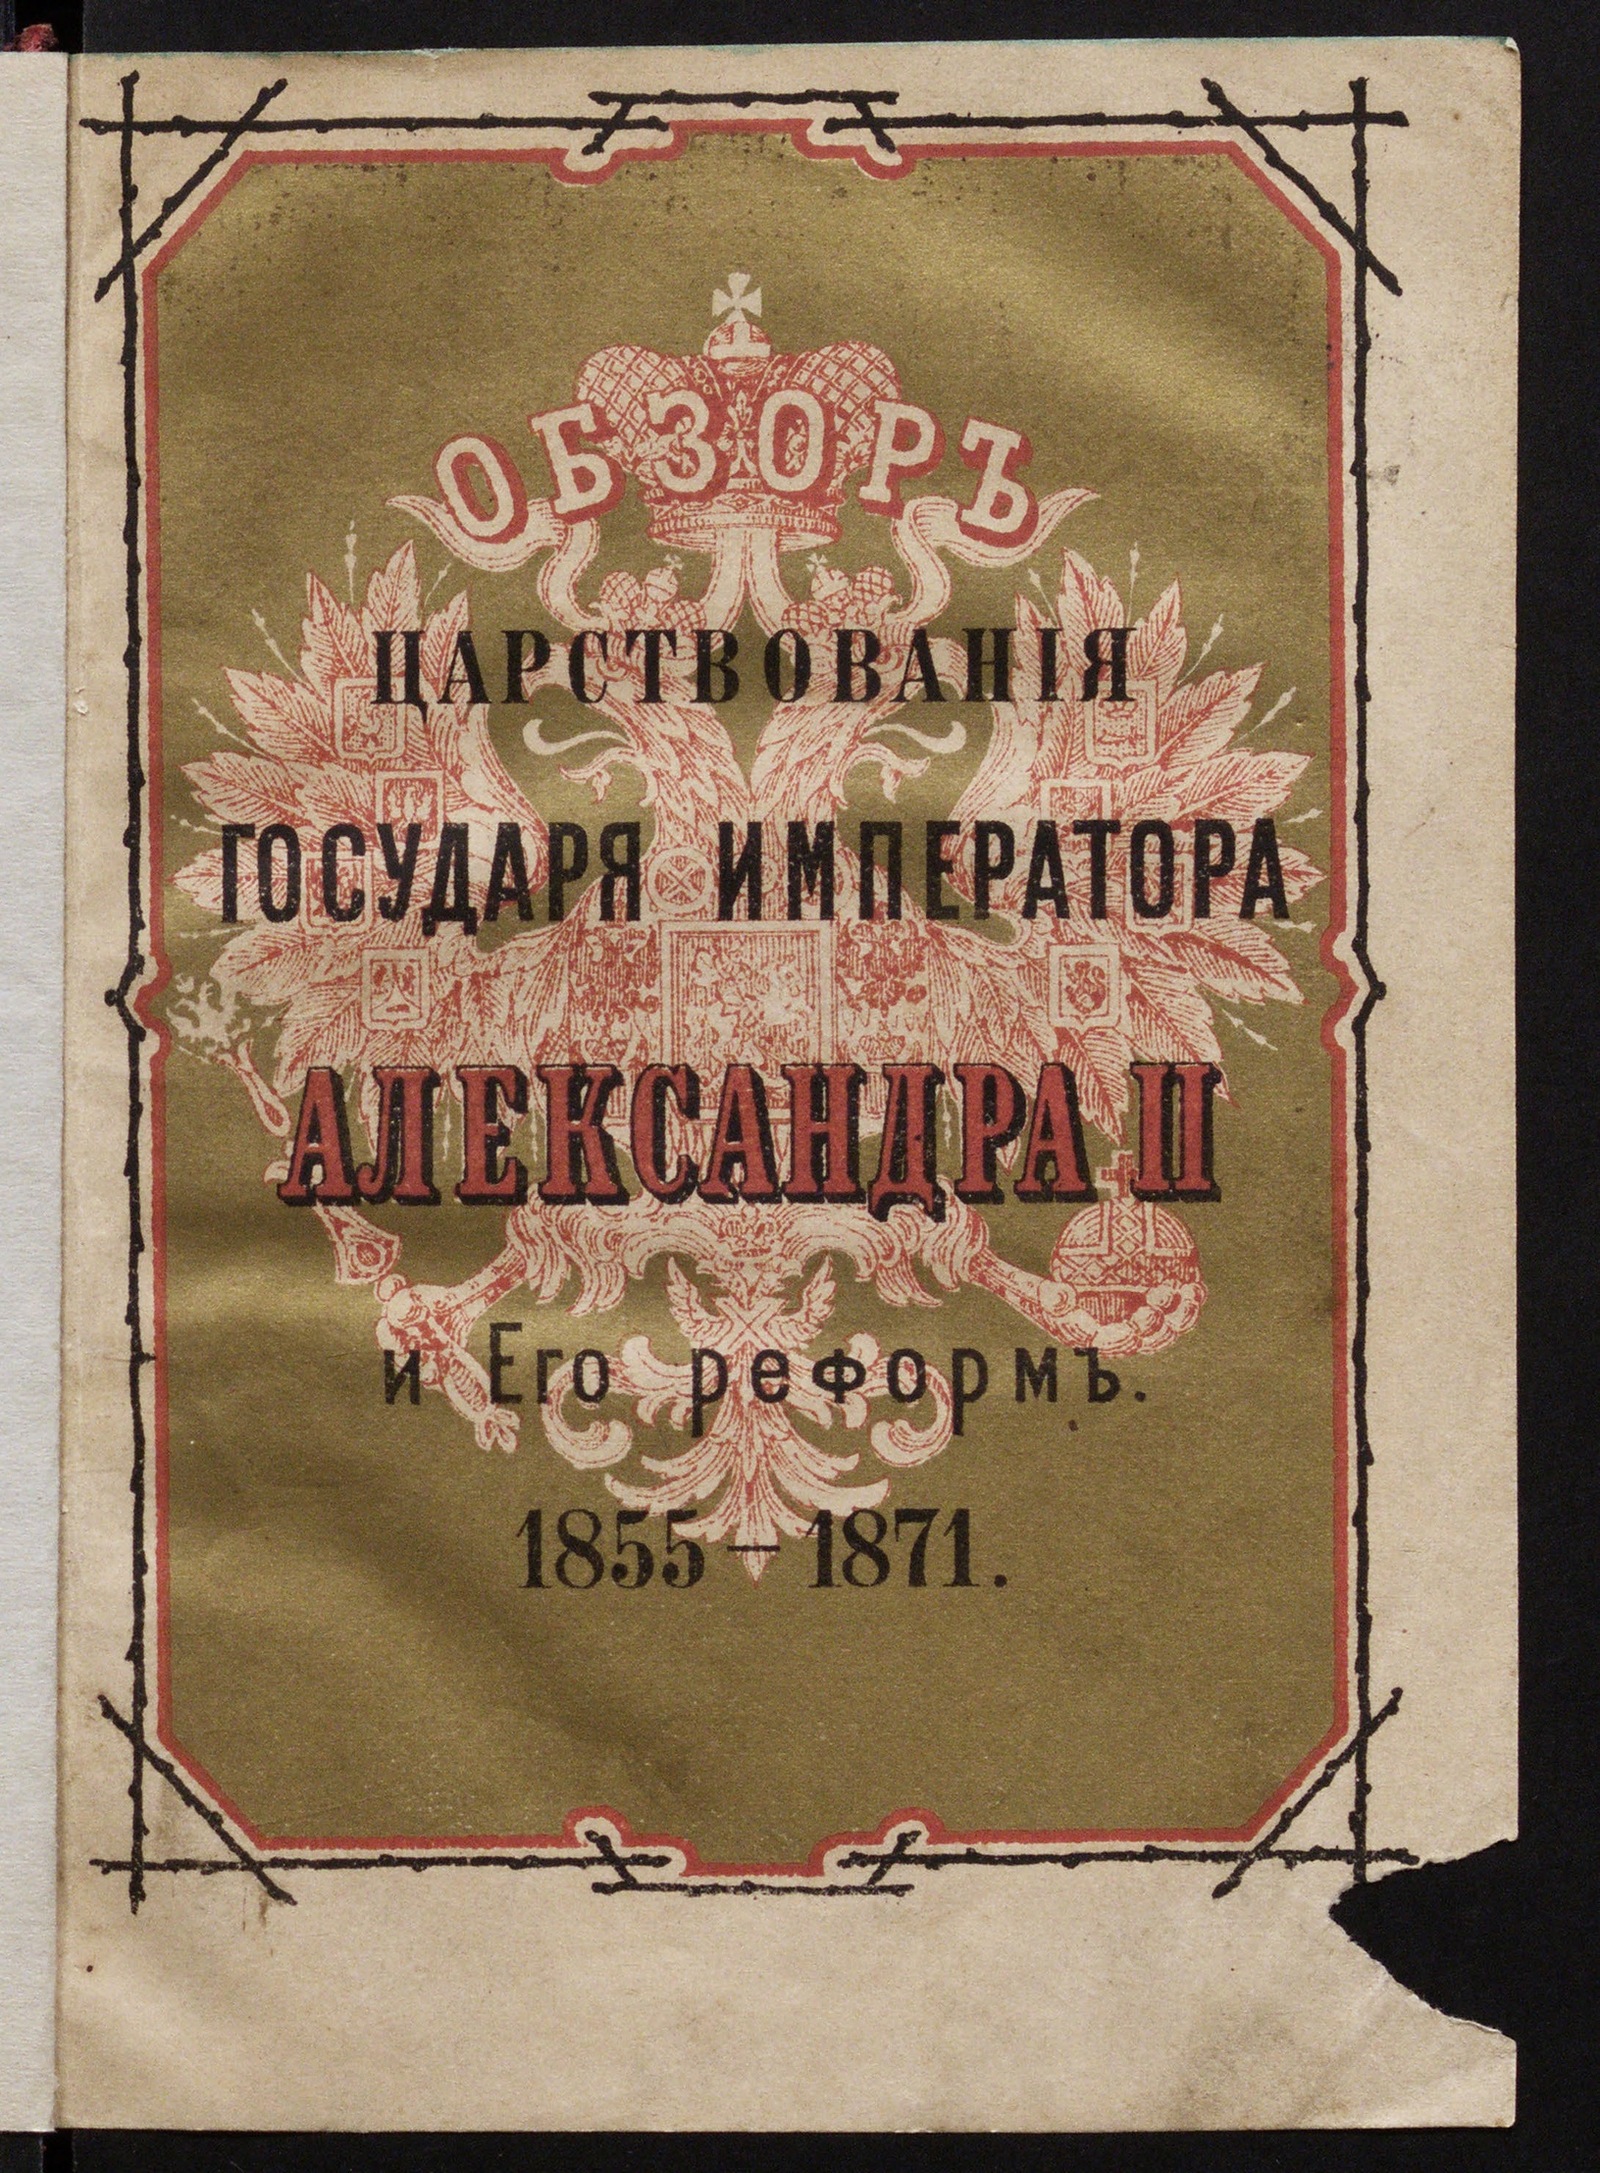 Изображение Обзор царствования государя императора Александра II и его реформ. 1855-1871